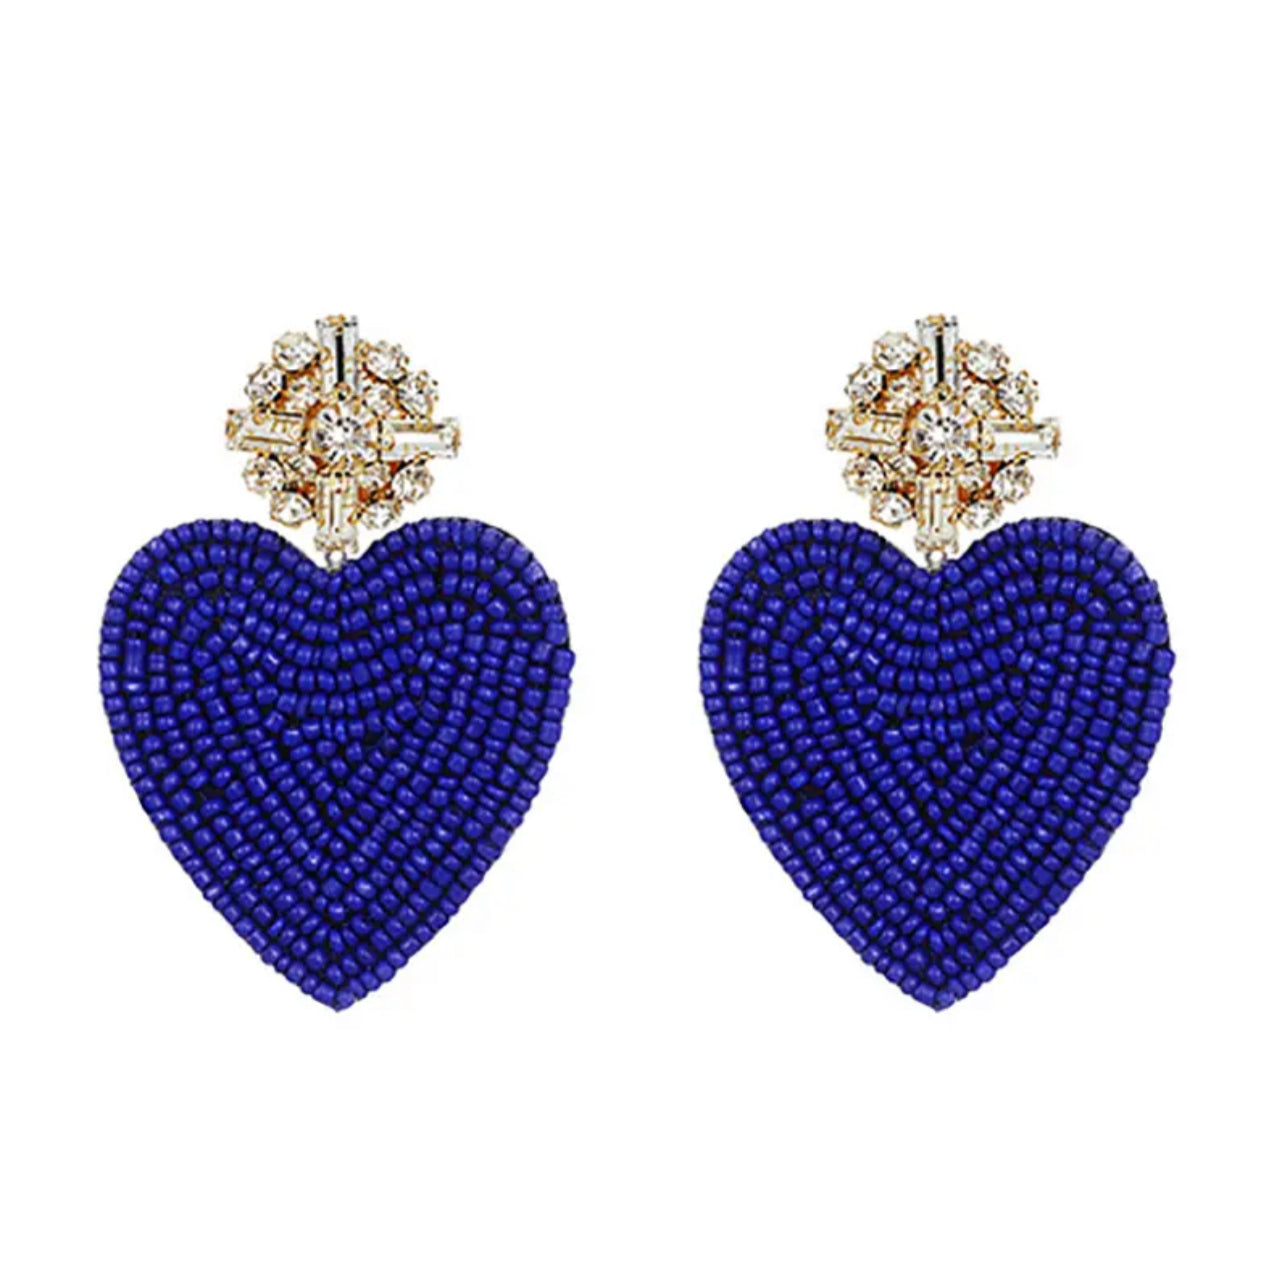 Blue Bling Beaded Heart Earrings 